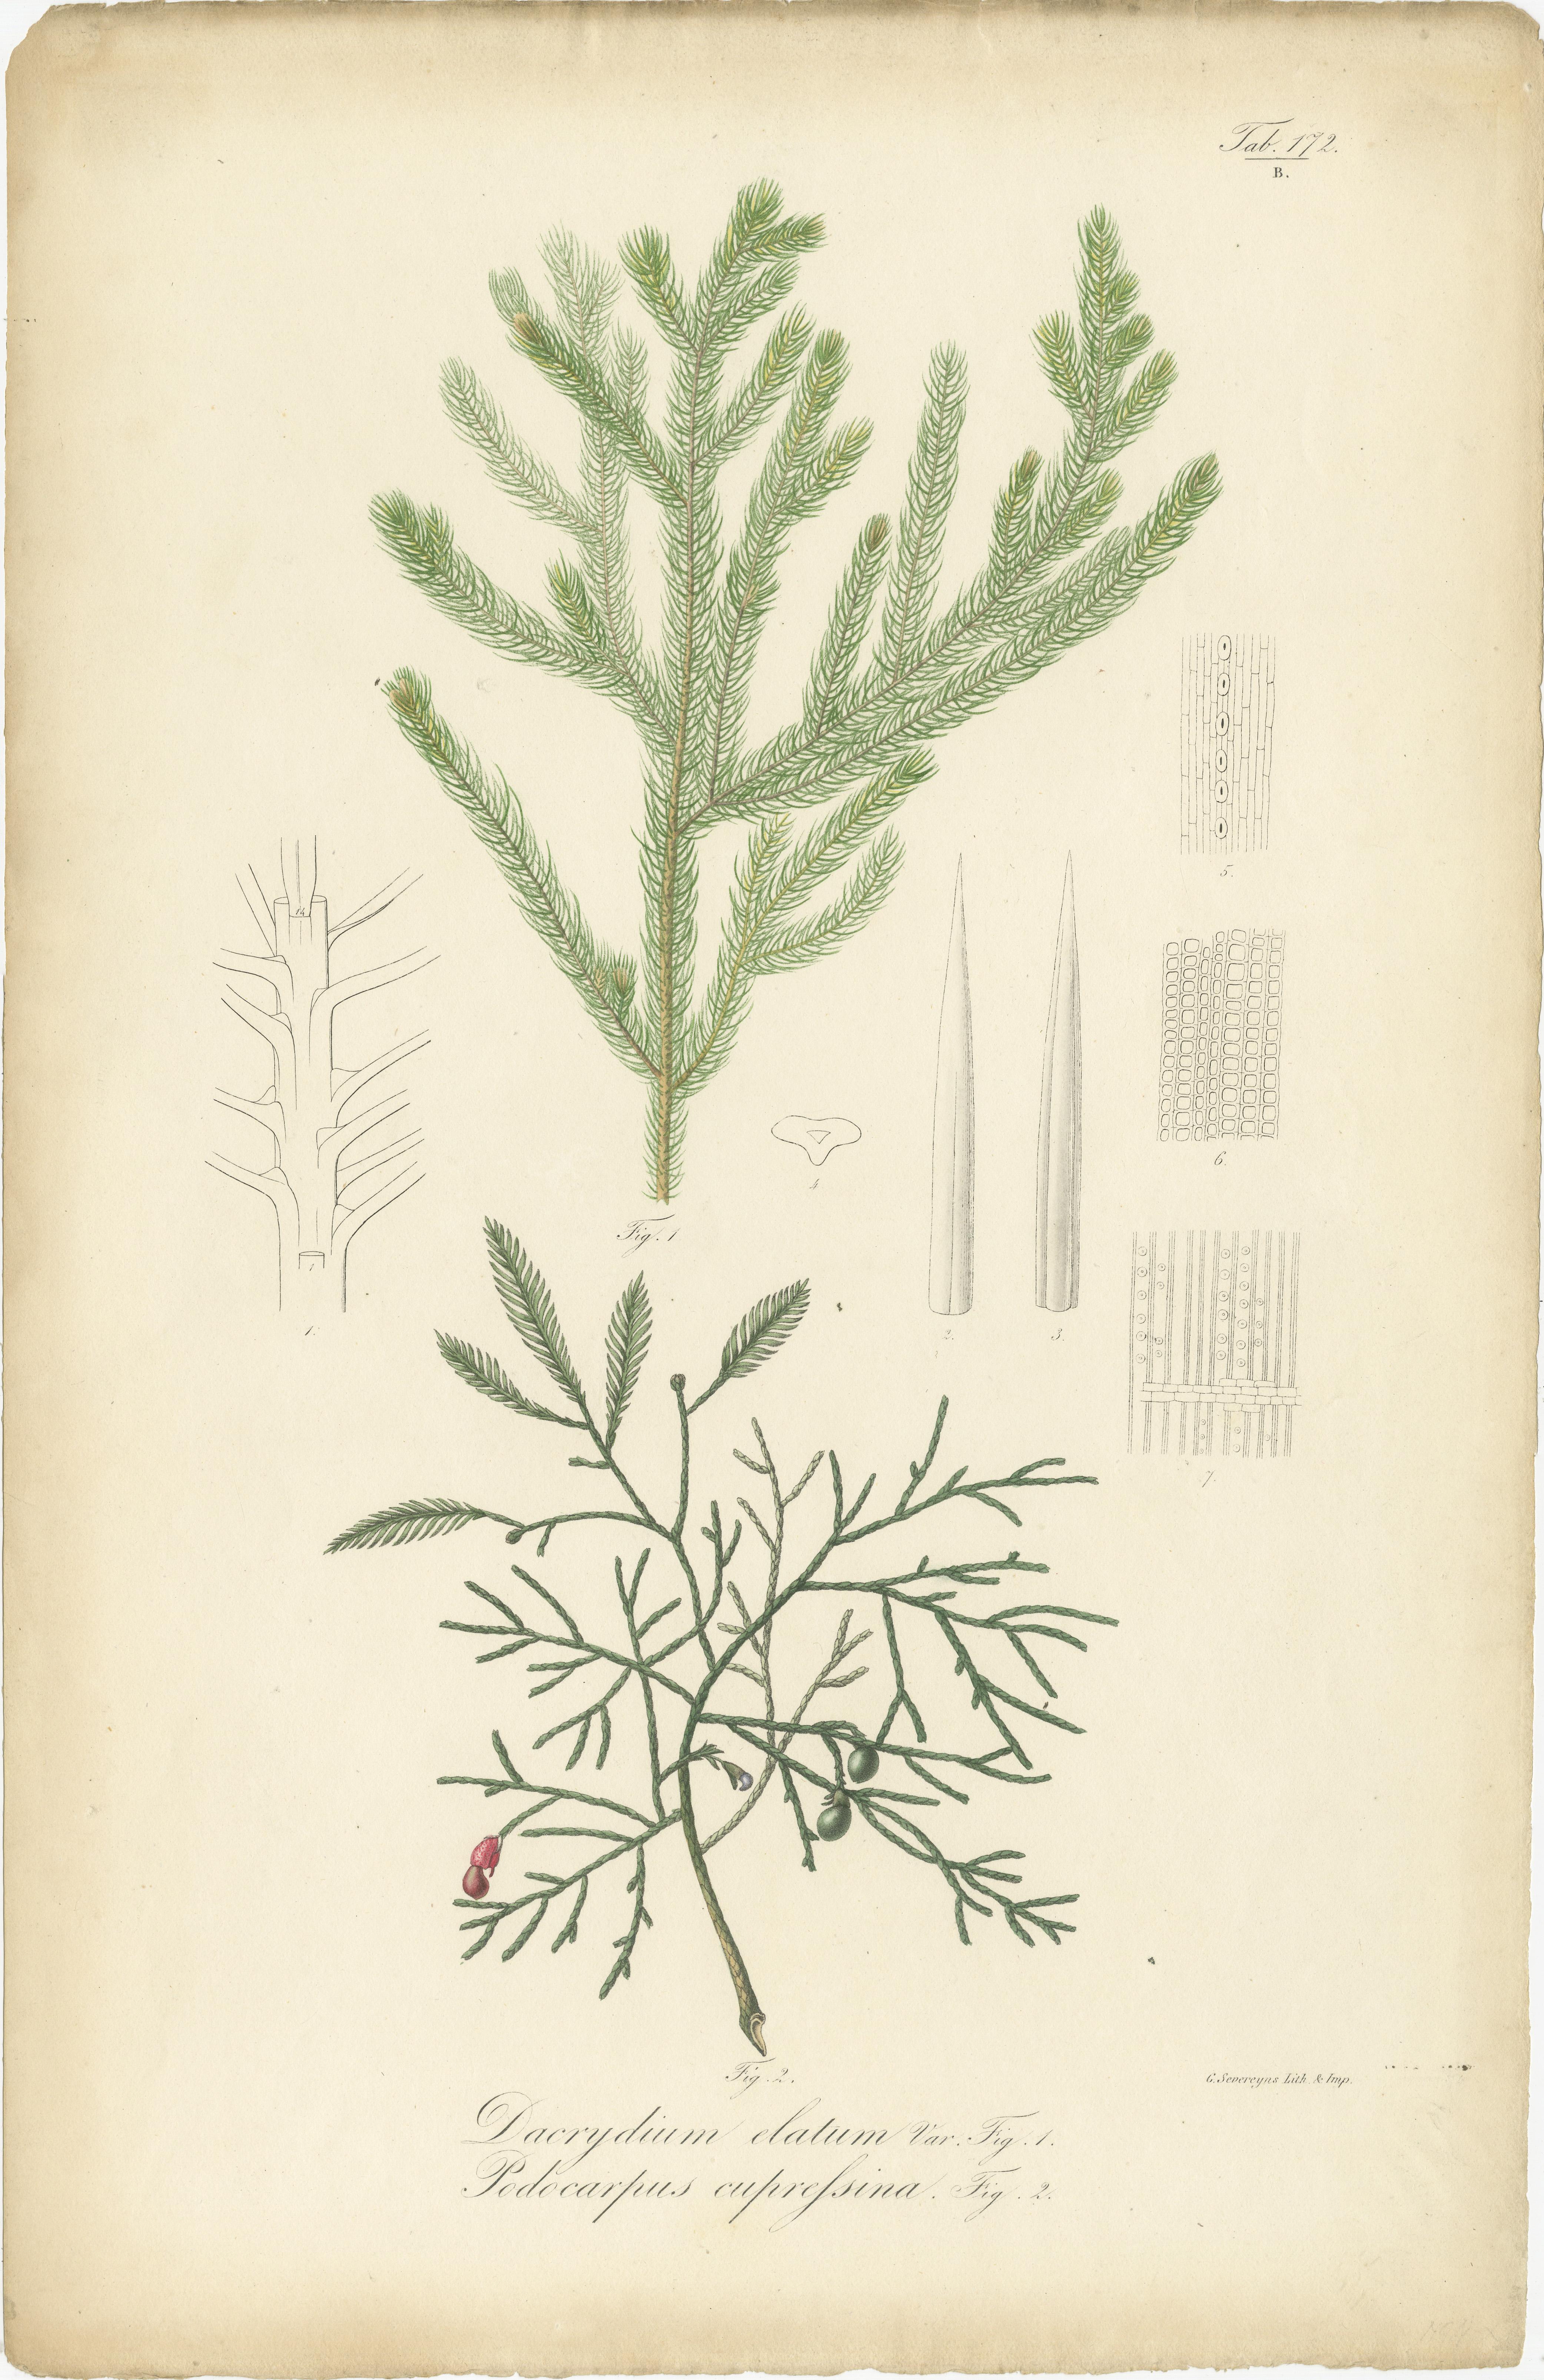 Antiker Botanikdruck mit dem Titel 'Dacrydium Elatum', Podocarpus eupressina. Alter Originaldruck von zwei Nadelbaumarten. Dieser Druck stammt aus Band 3 der 